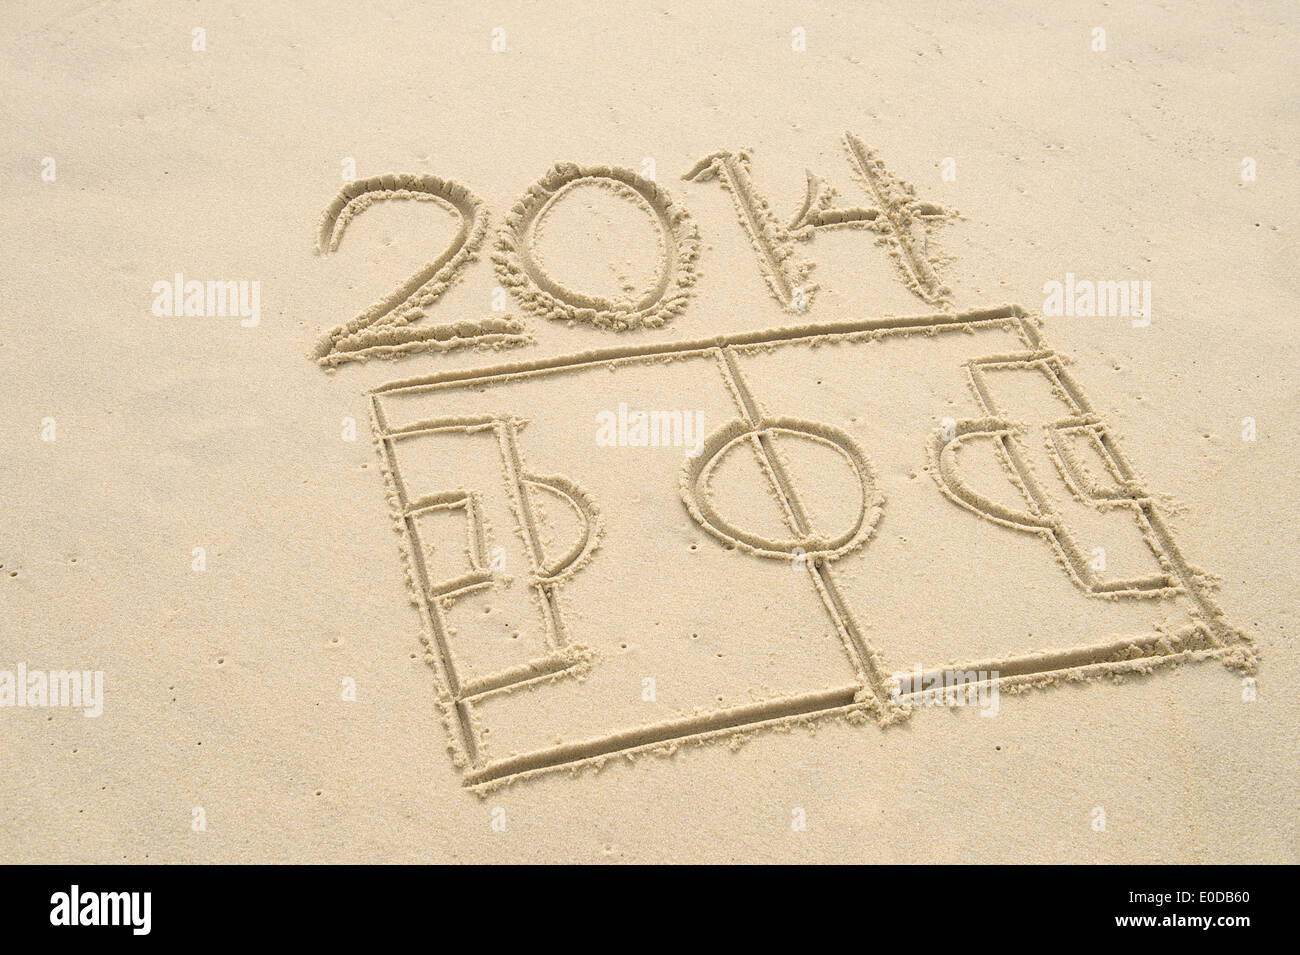 Linea semplice disegno del 2014 football soccer pitch in sabbia sulla spiaggia brasiliana Foto Stock